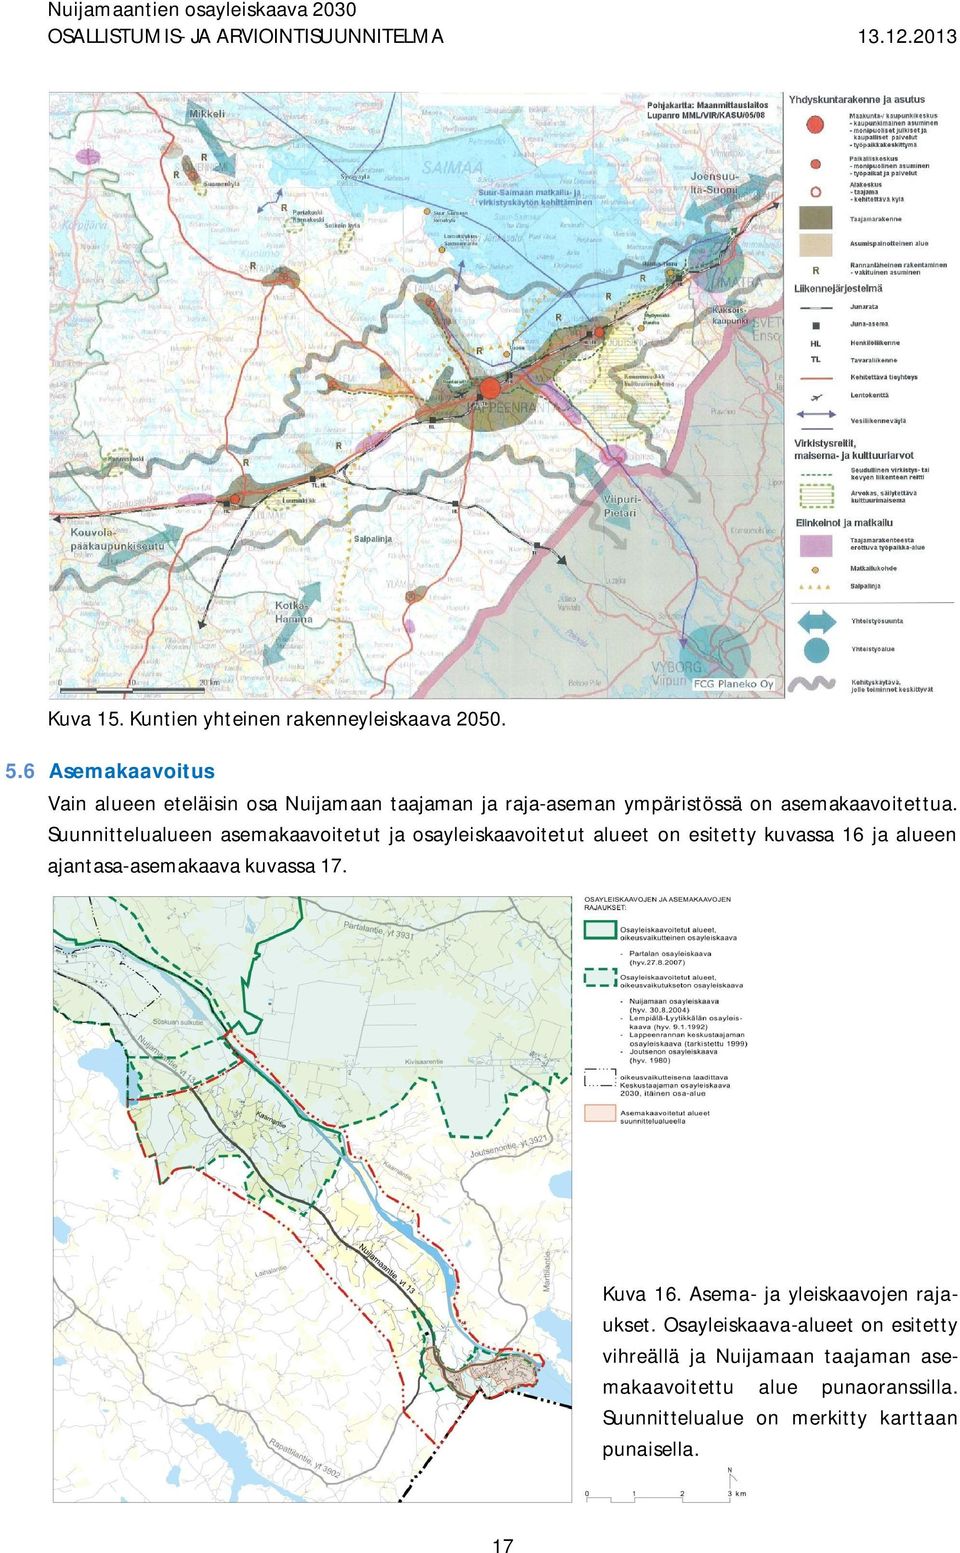 Suunnittelualueen asemakaavoitetut ja osayleiskaavoitetut alueet on esitetty kuvassa 16 ja alueen ajantasa-asemakaava